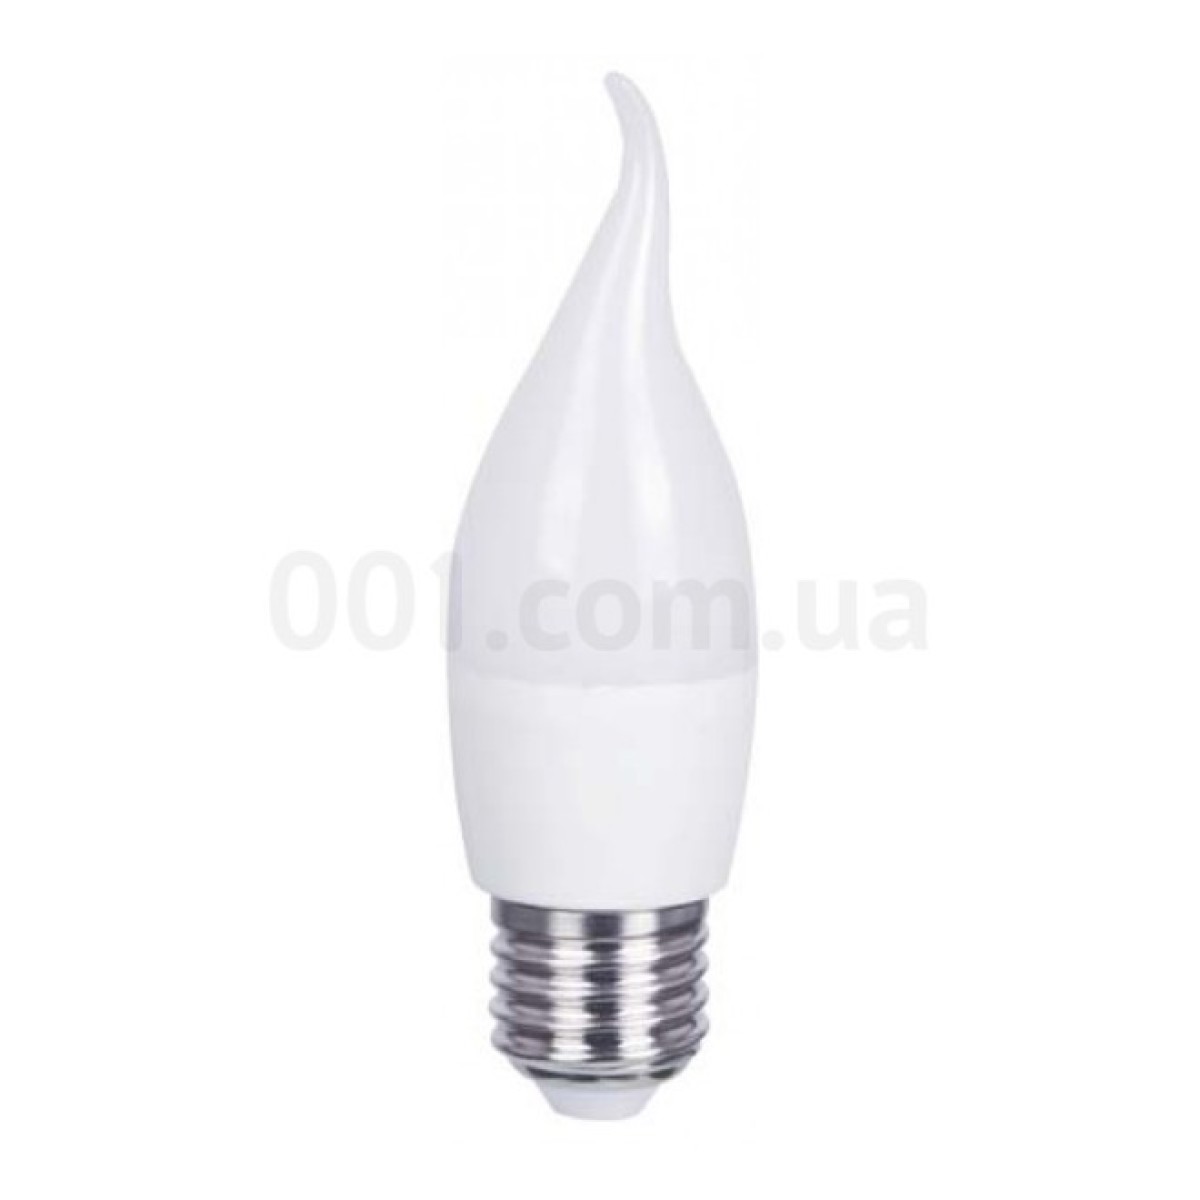 Світлодіодна лампа LB-737 CF37 (свічка на вітрі) 6Вт 2700K E27, Feron 256_256.jpg